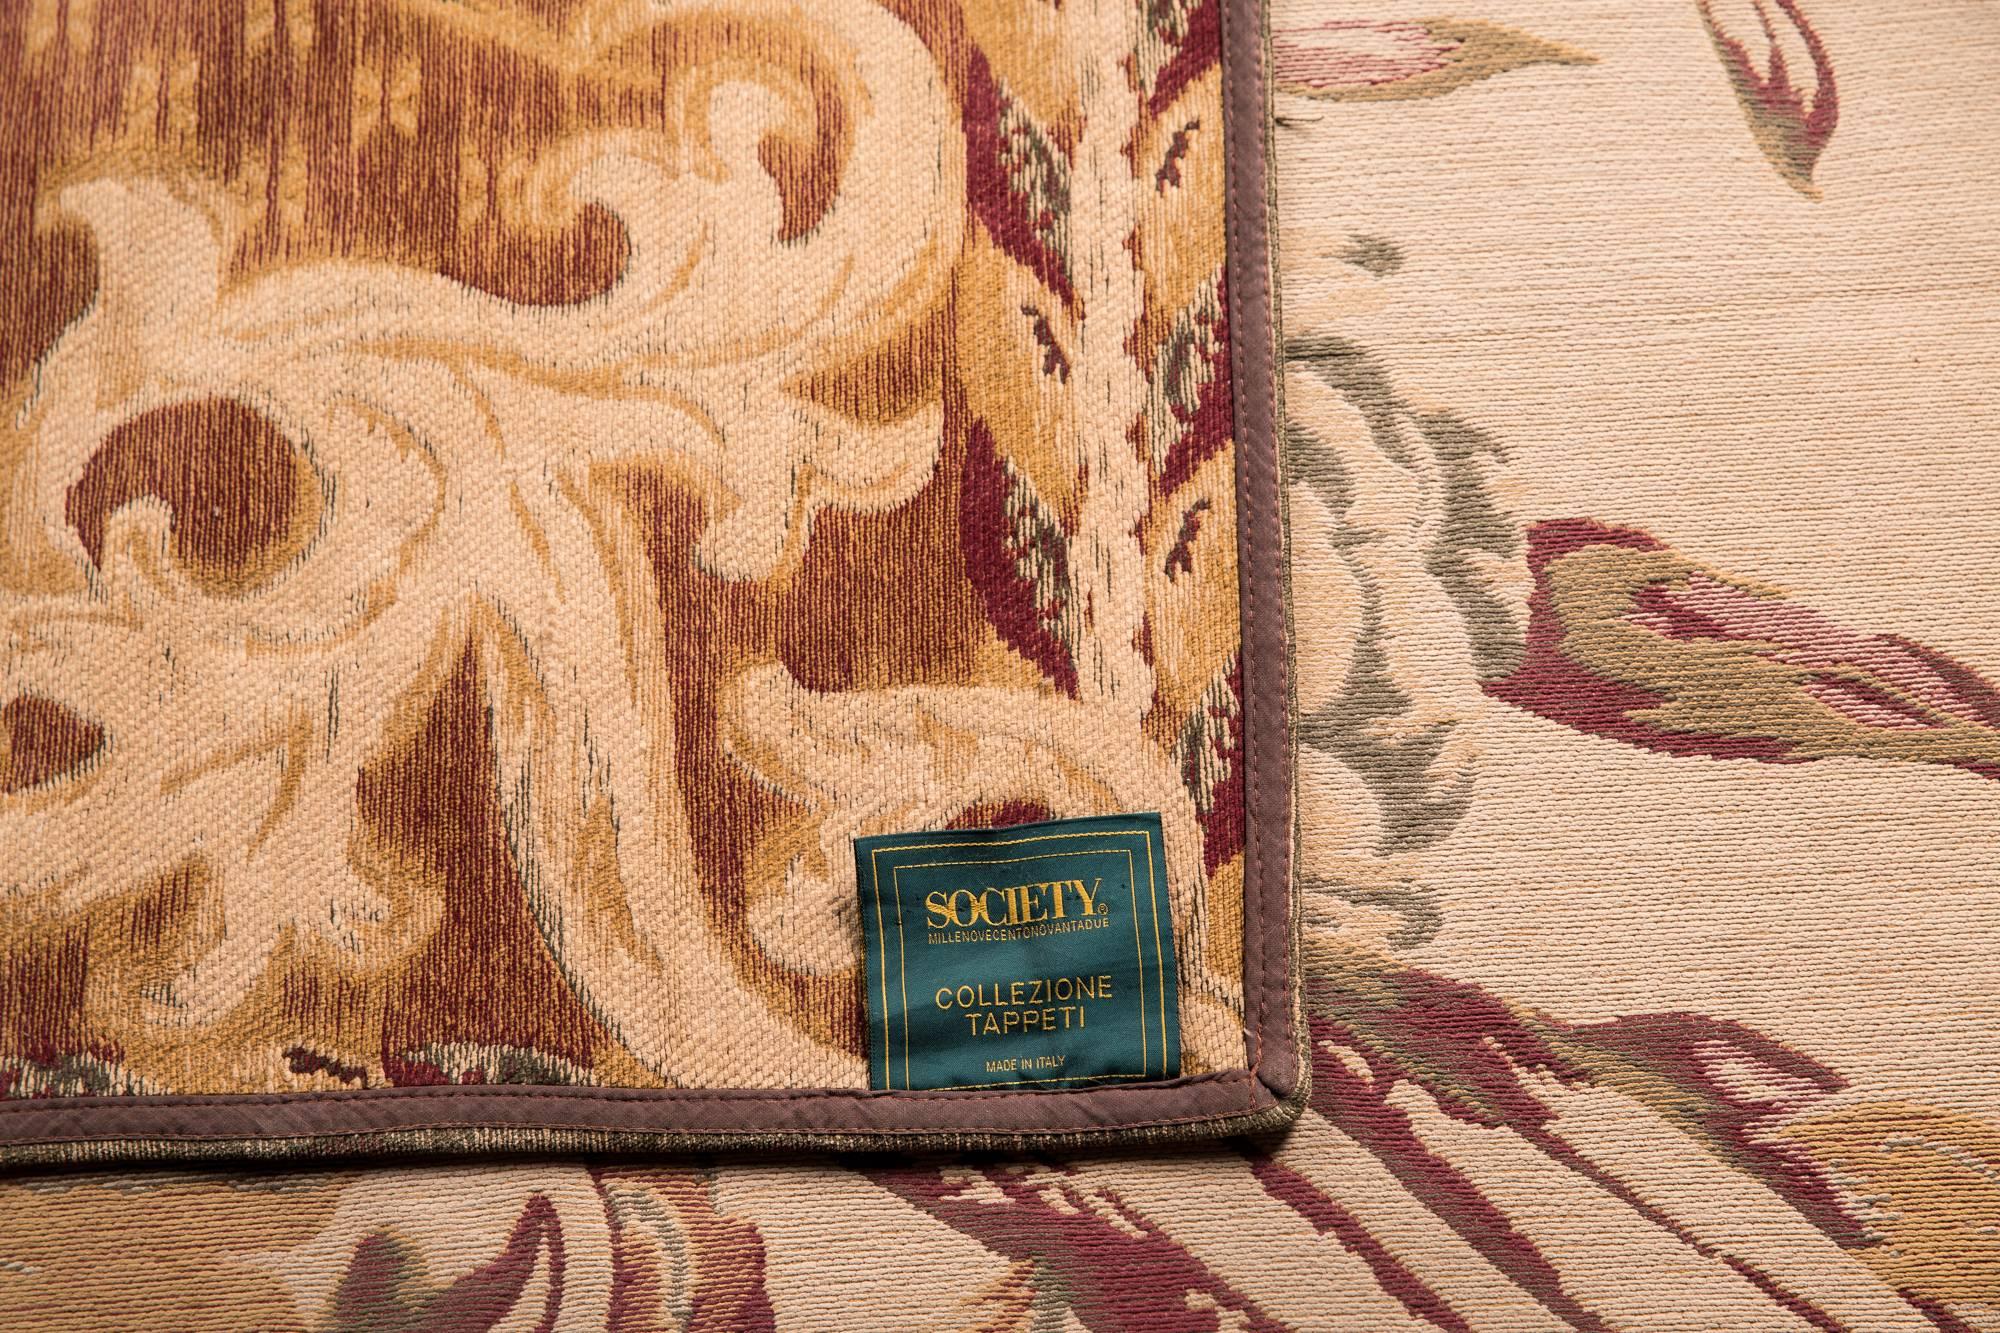 Exclusive Italian Carpet by Society Collezione Tappeti, 170cm x 400cm In Good Condition In Berlin, DE